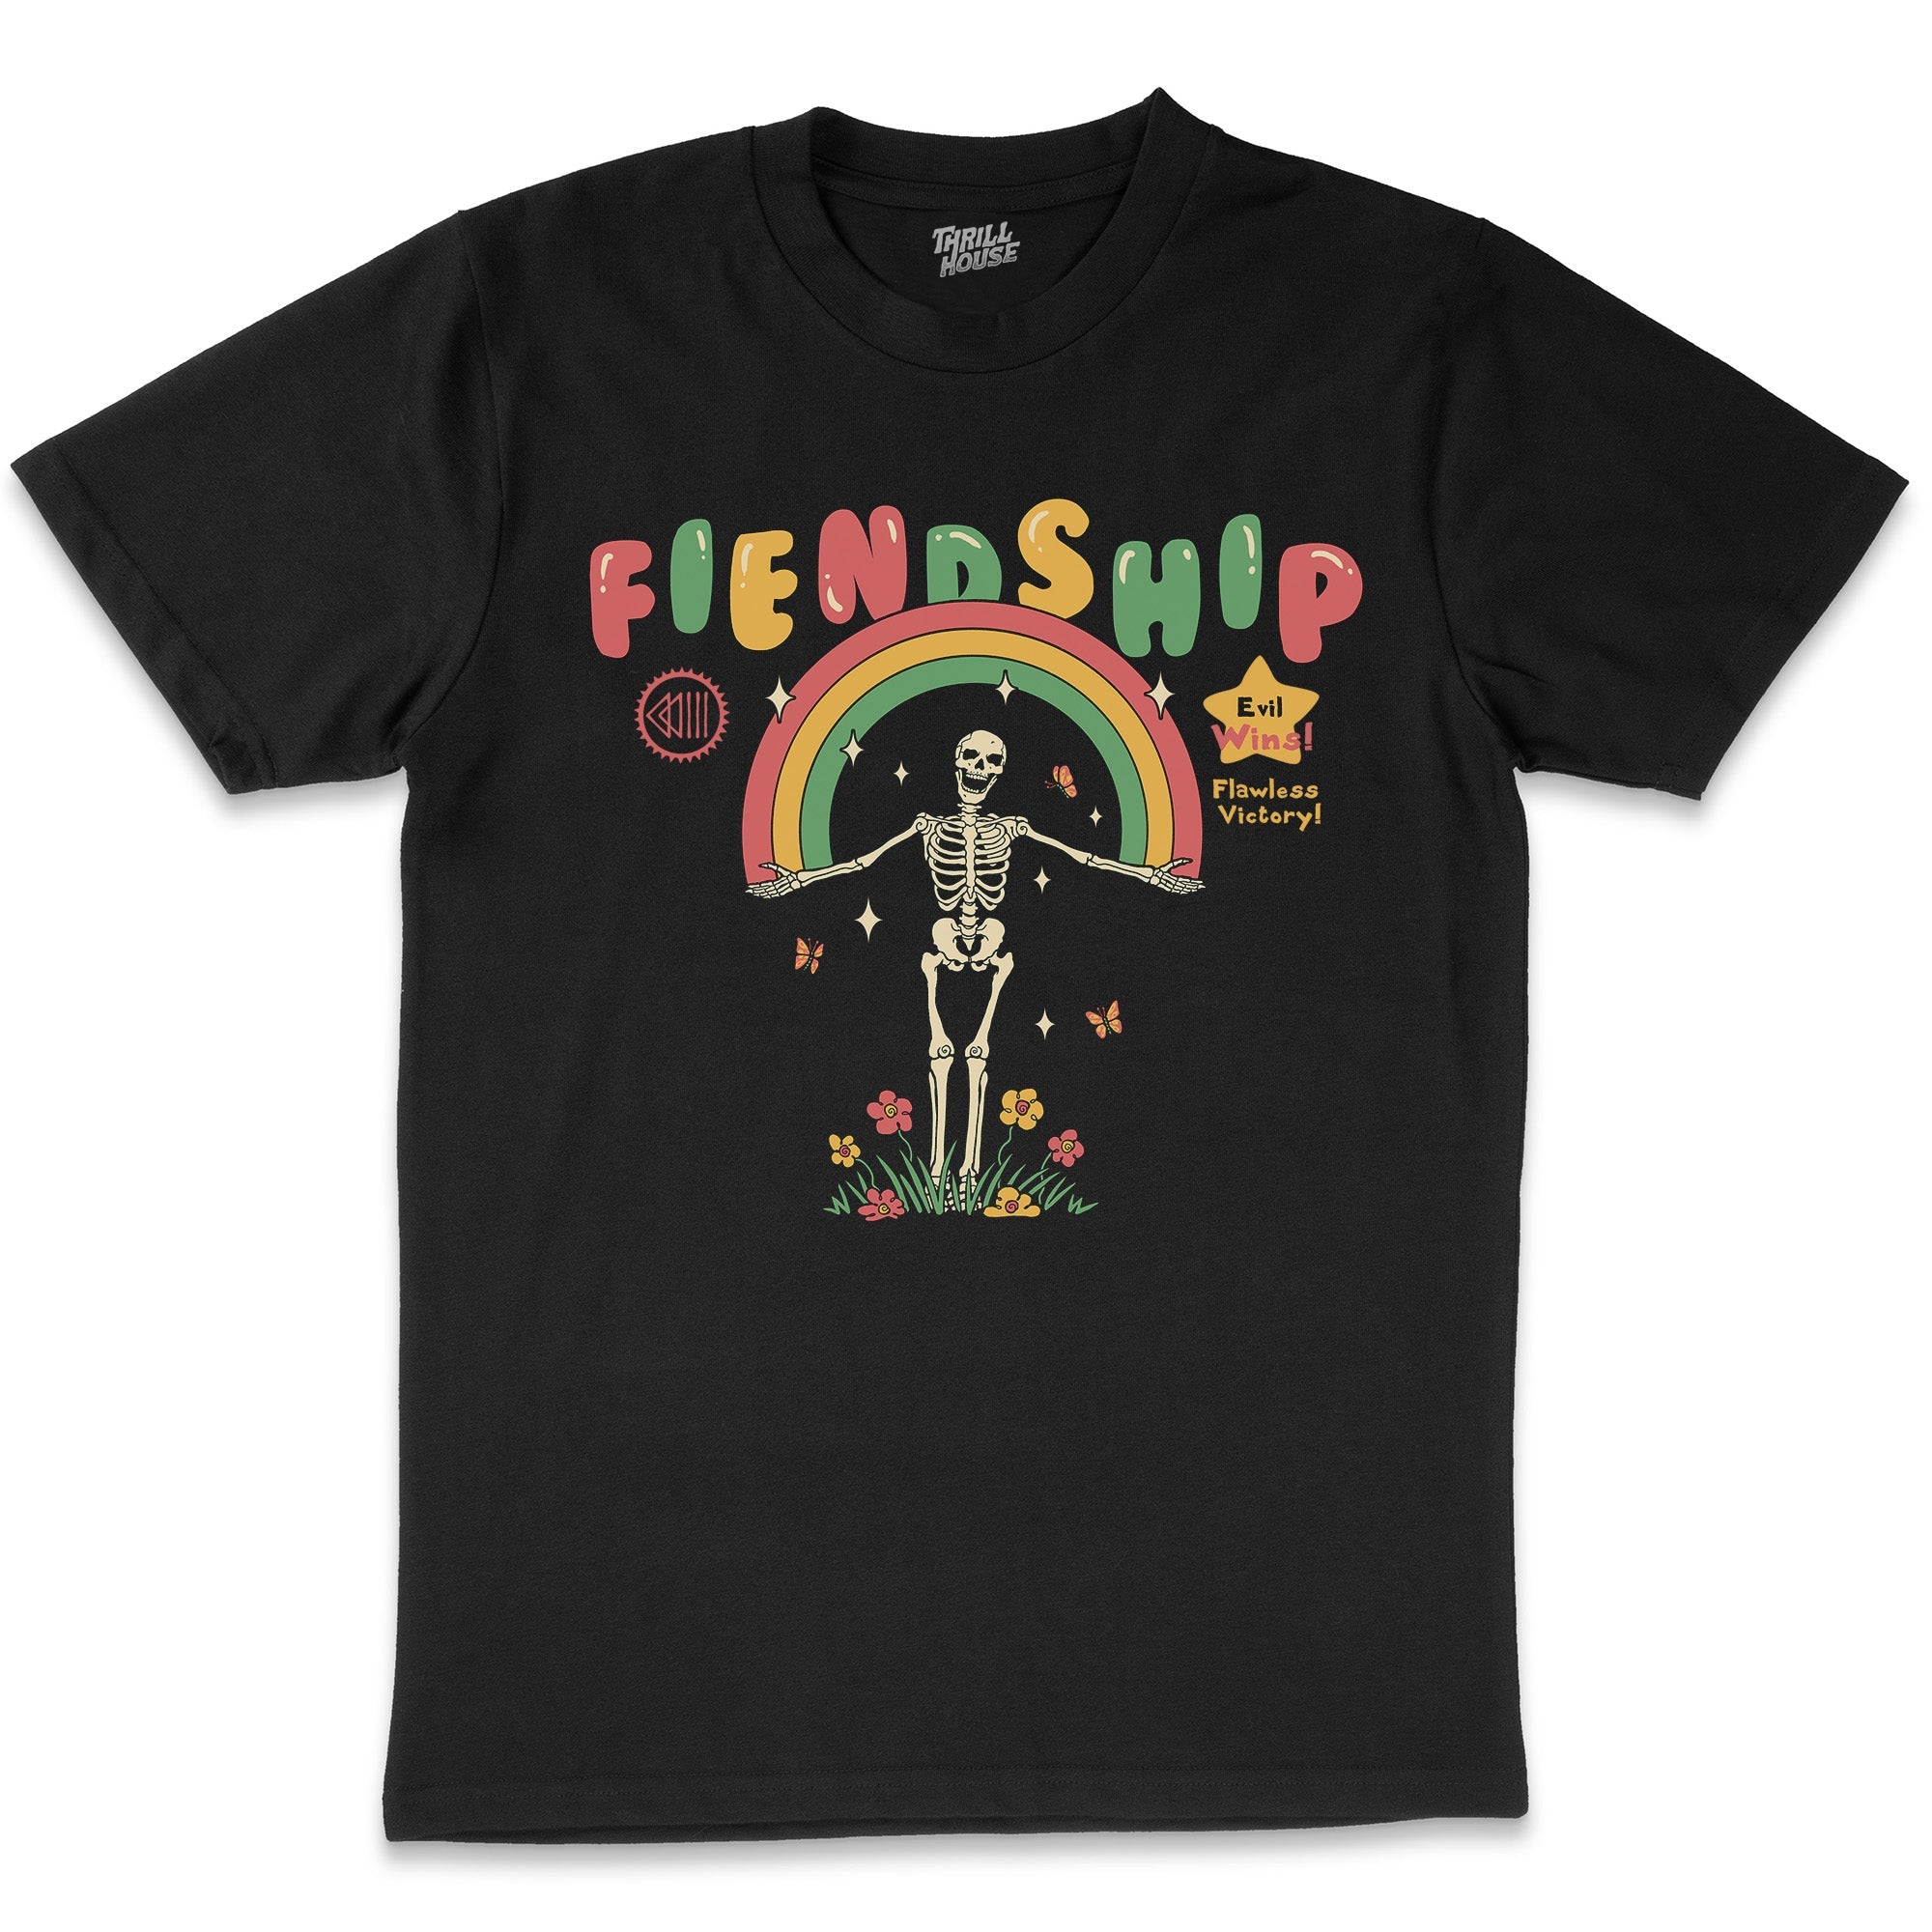 Fiendship T-Shirt Australia Online Black